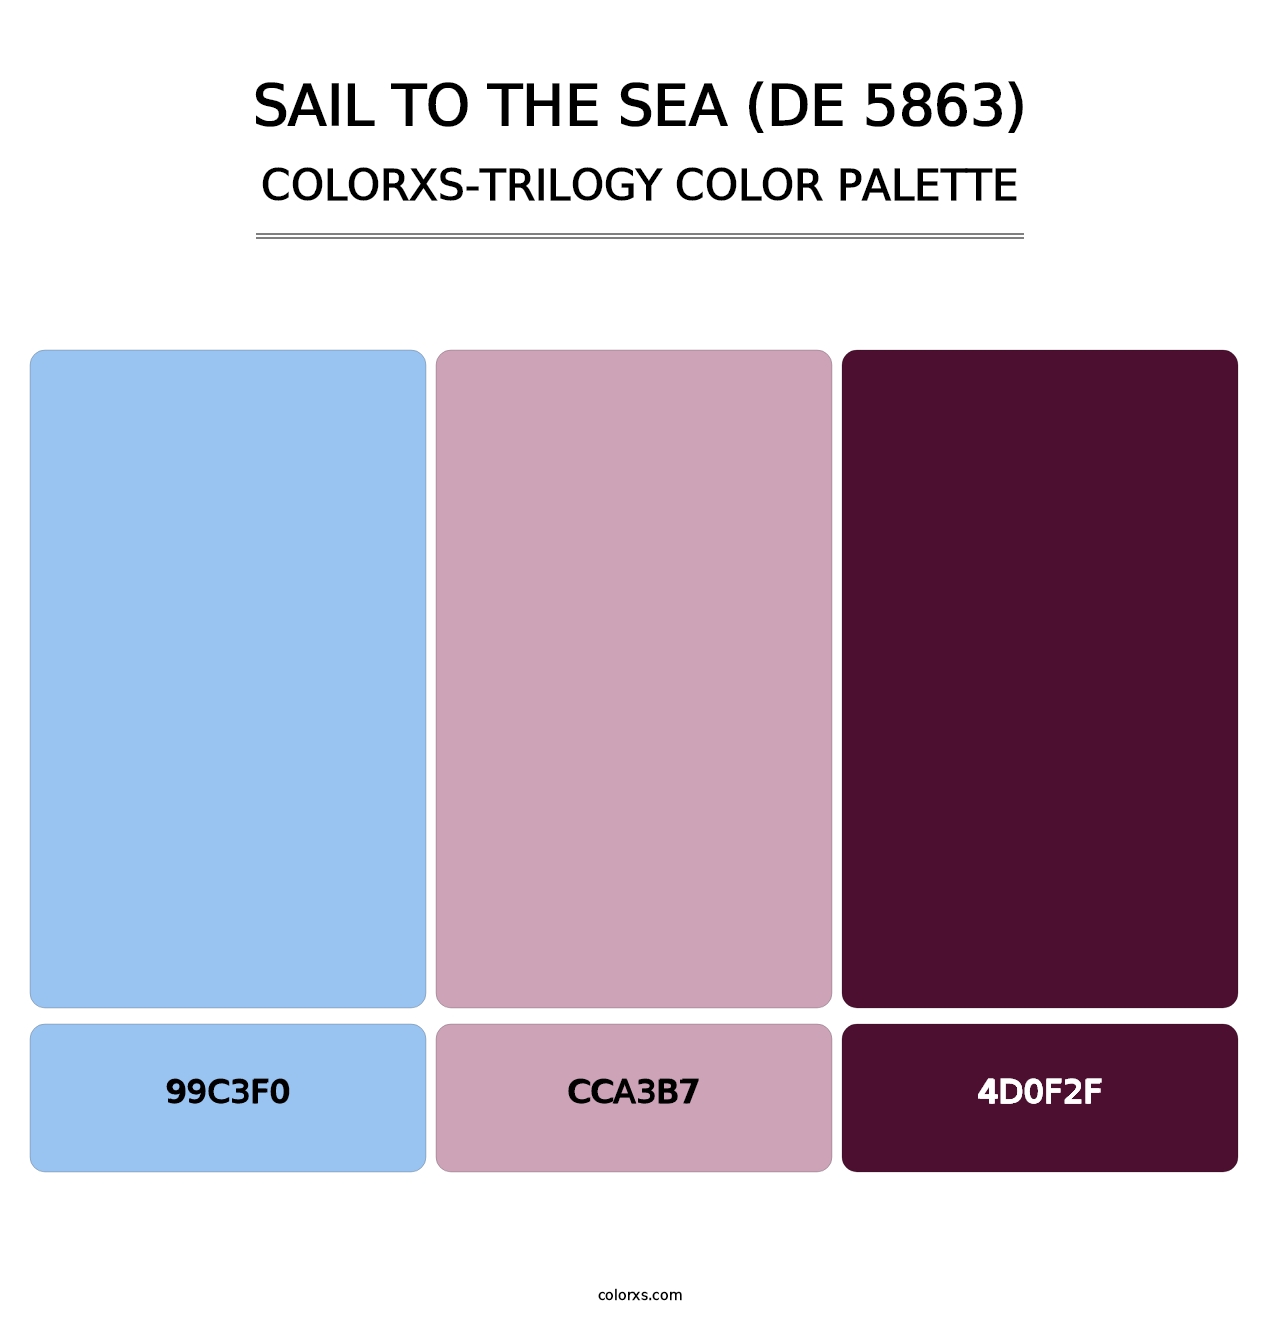 Sail to the Sea (DE 5863) - Colorxs Trilogy Palette